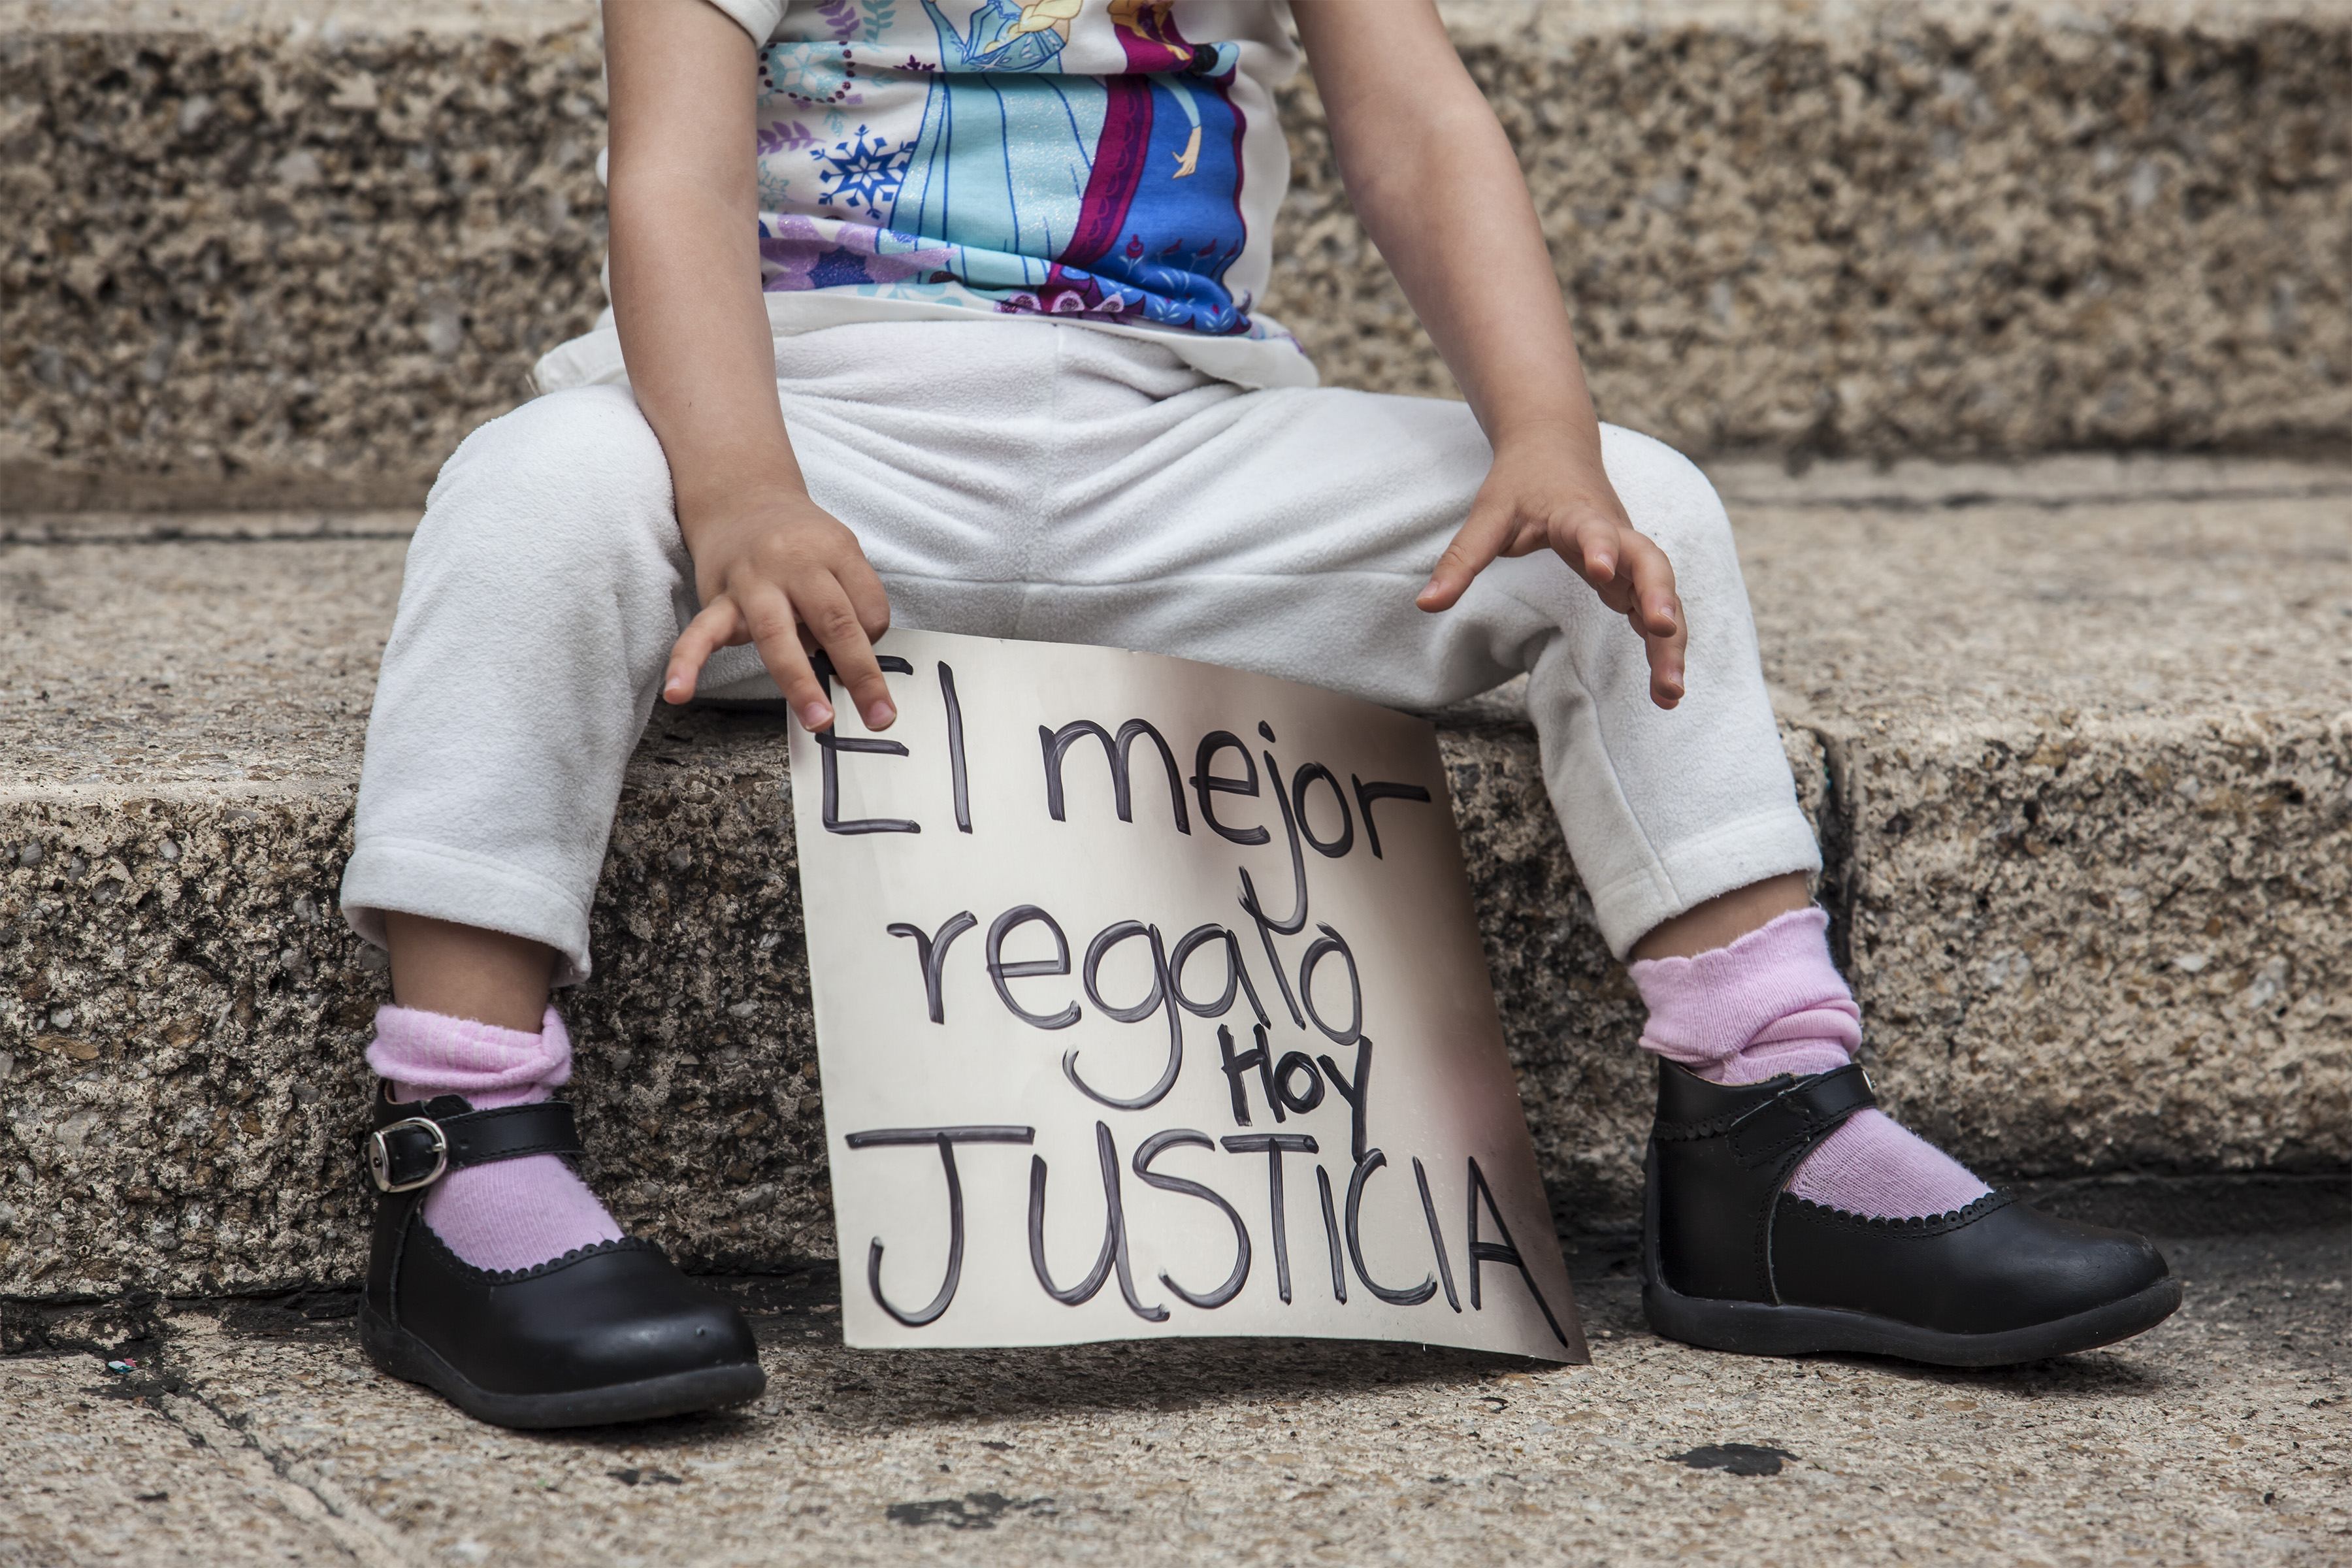 Hostigamiento sexual infantil vencería 5 años después, en Querétaro